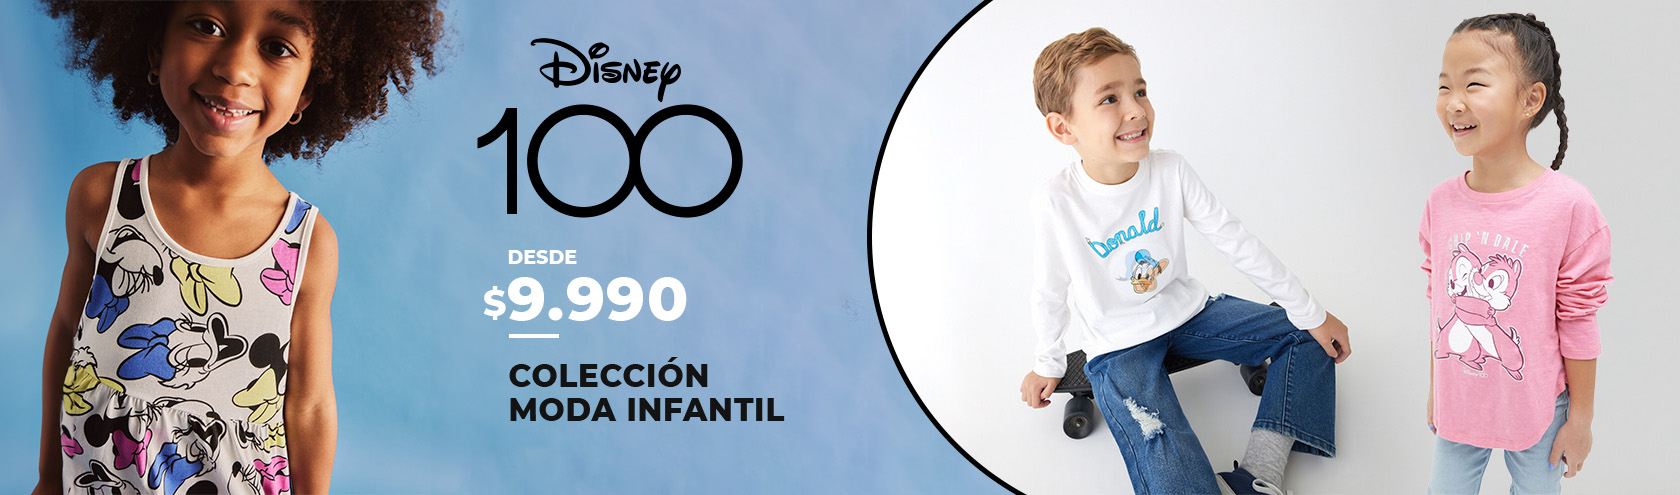 Colección Moda Infantil Disney 100 años